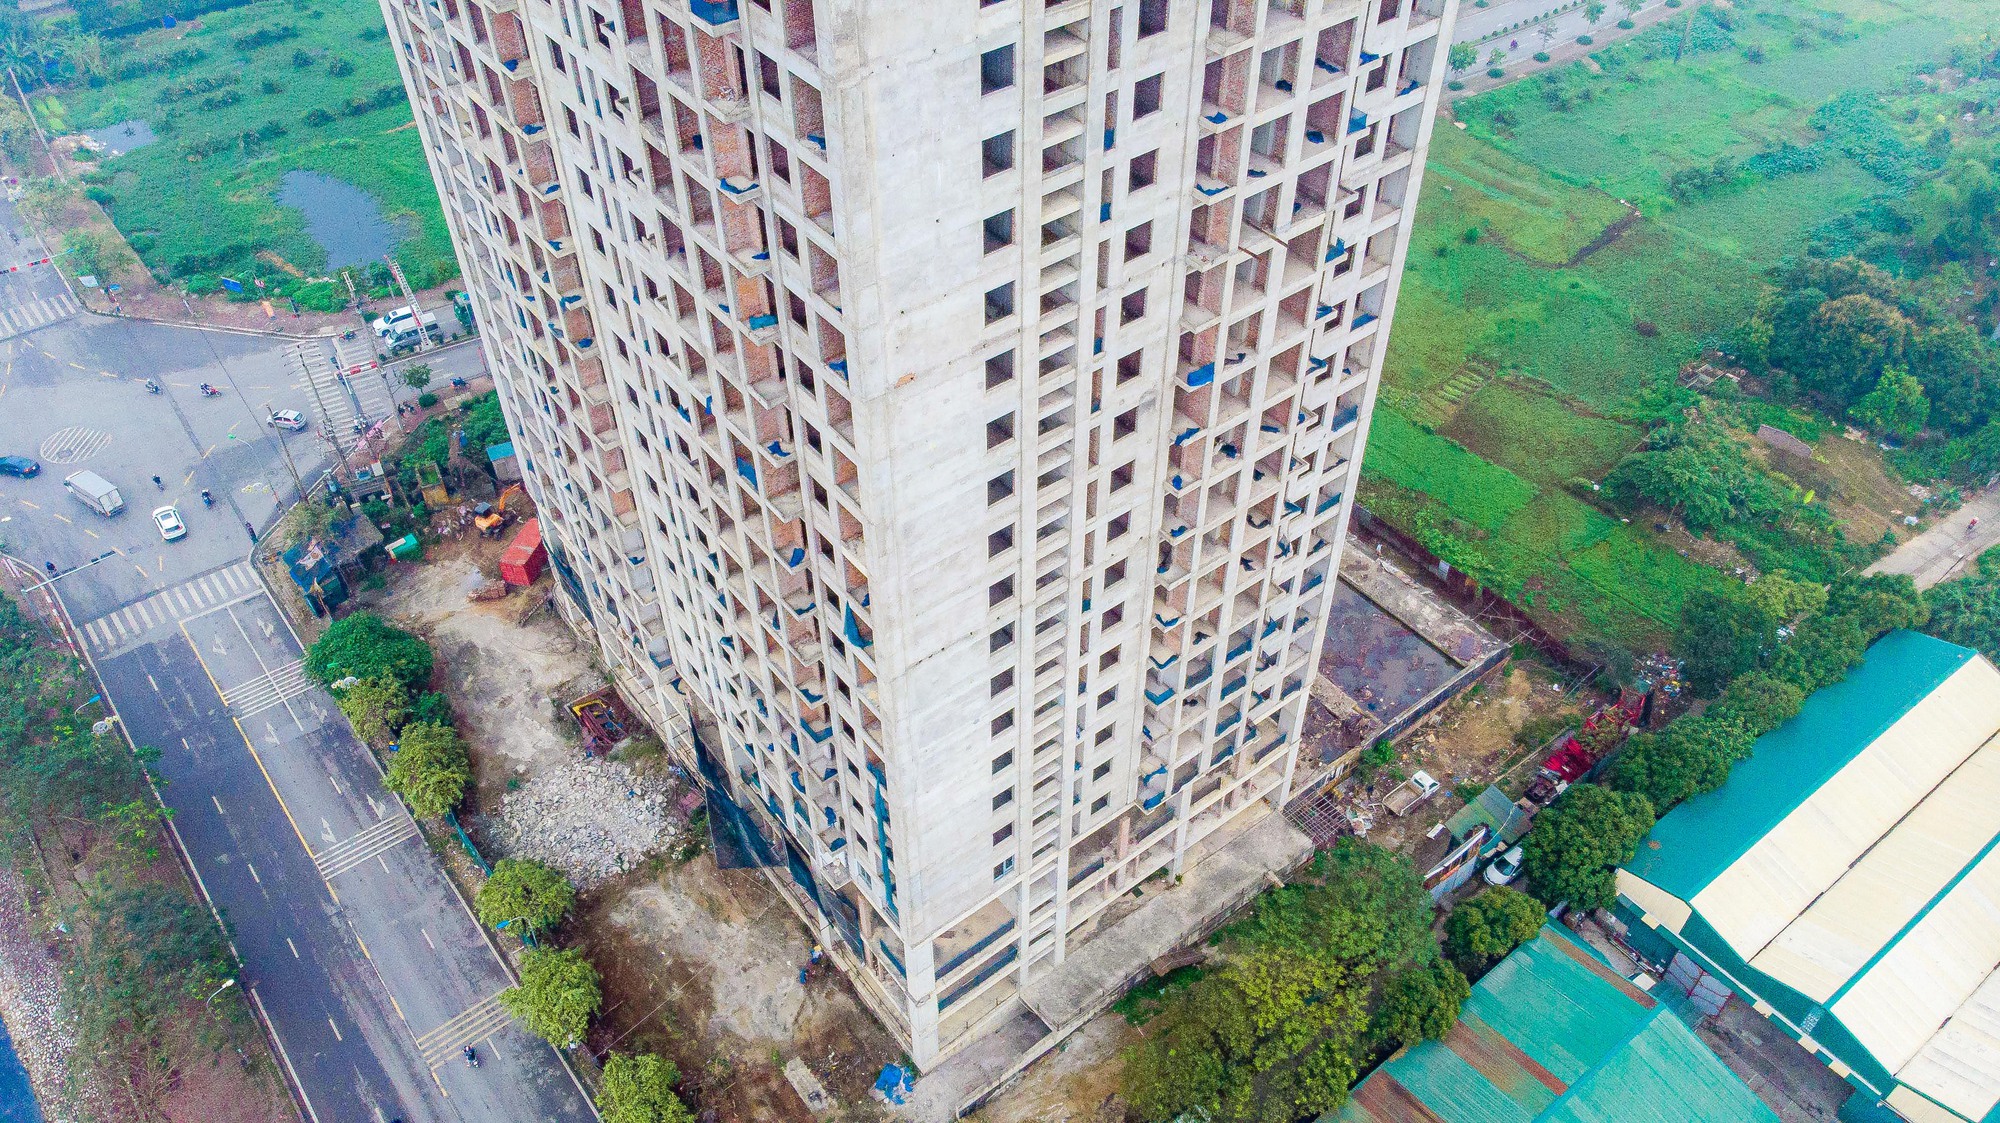 Cận cảnh khối bêtông 25 tầng bỏ hoang trên khu đất đắc địa ở Hà Nội - Ảnh 5.